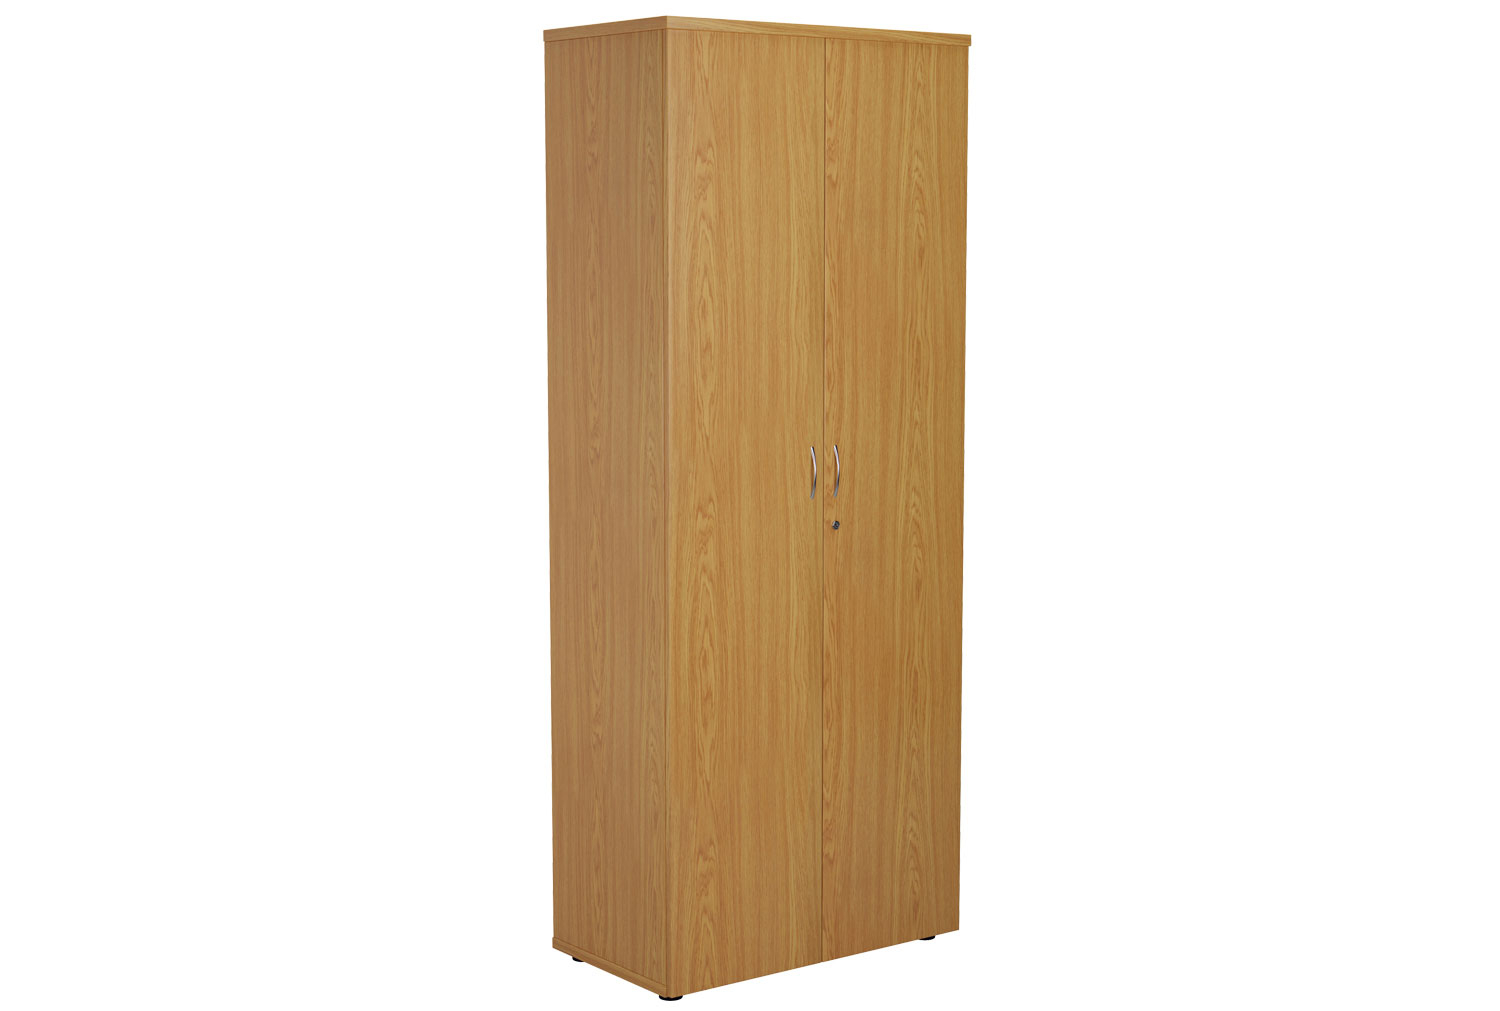 Proteus Double Door Cupboard, 4 Shelf - 80wx45dx200h (cm), Oak